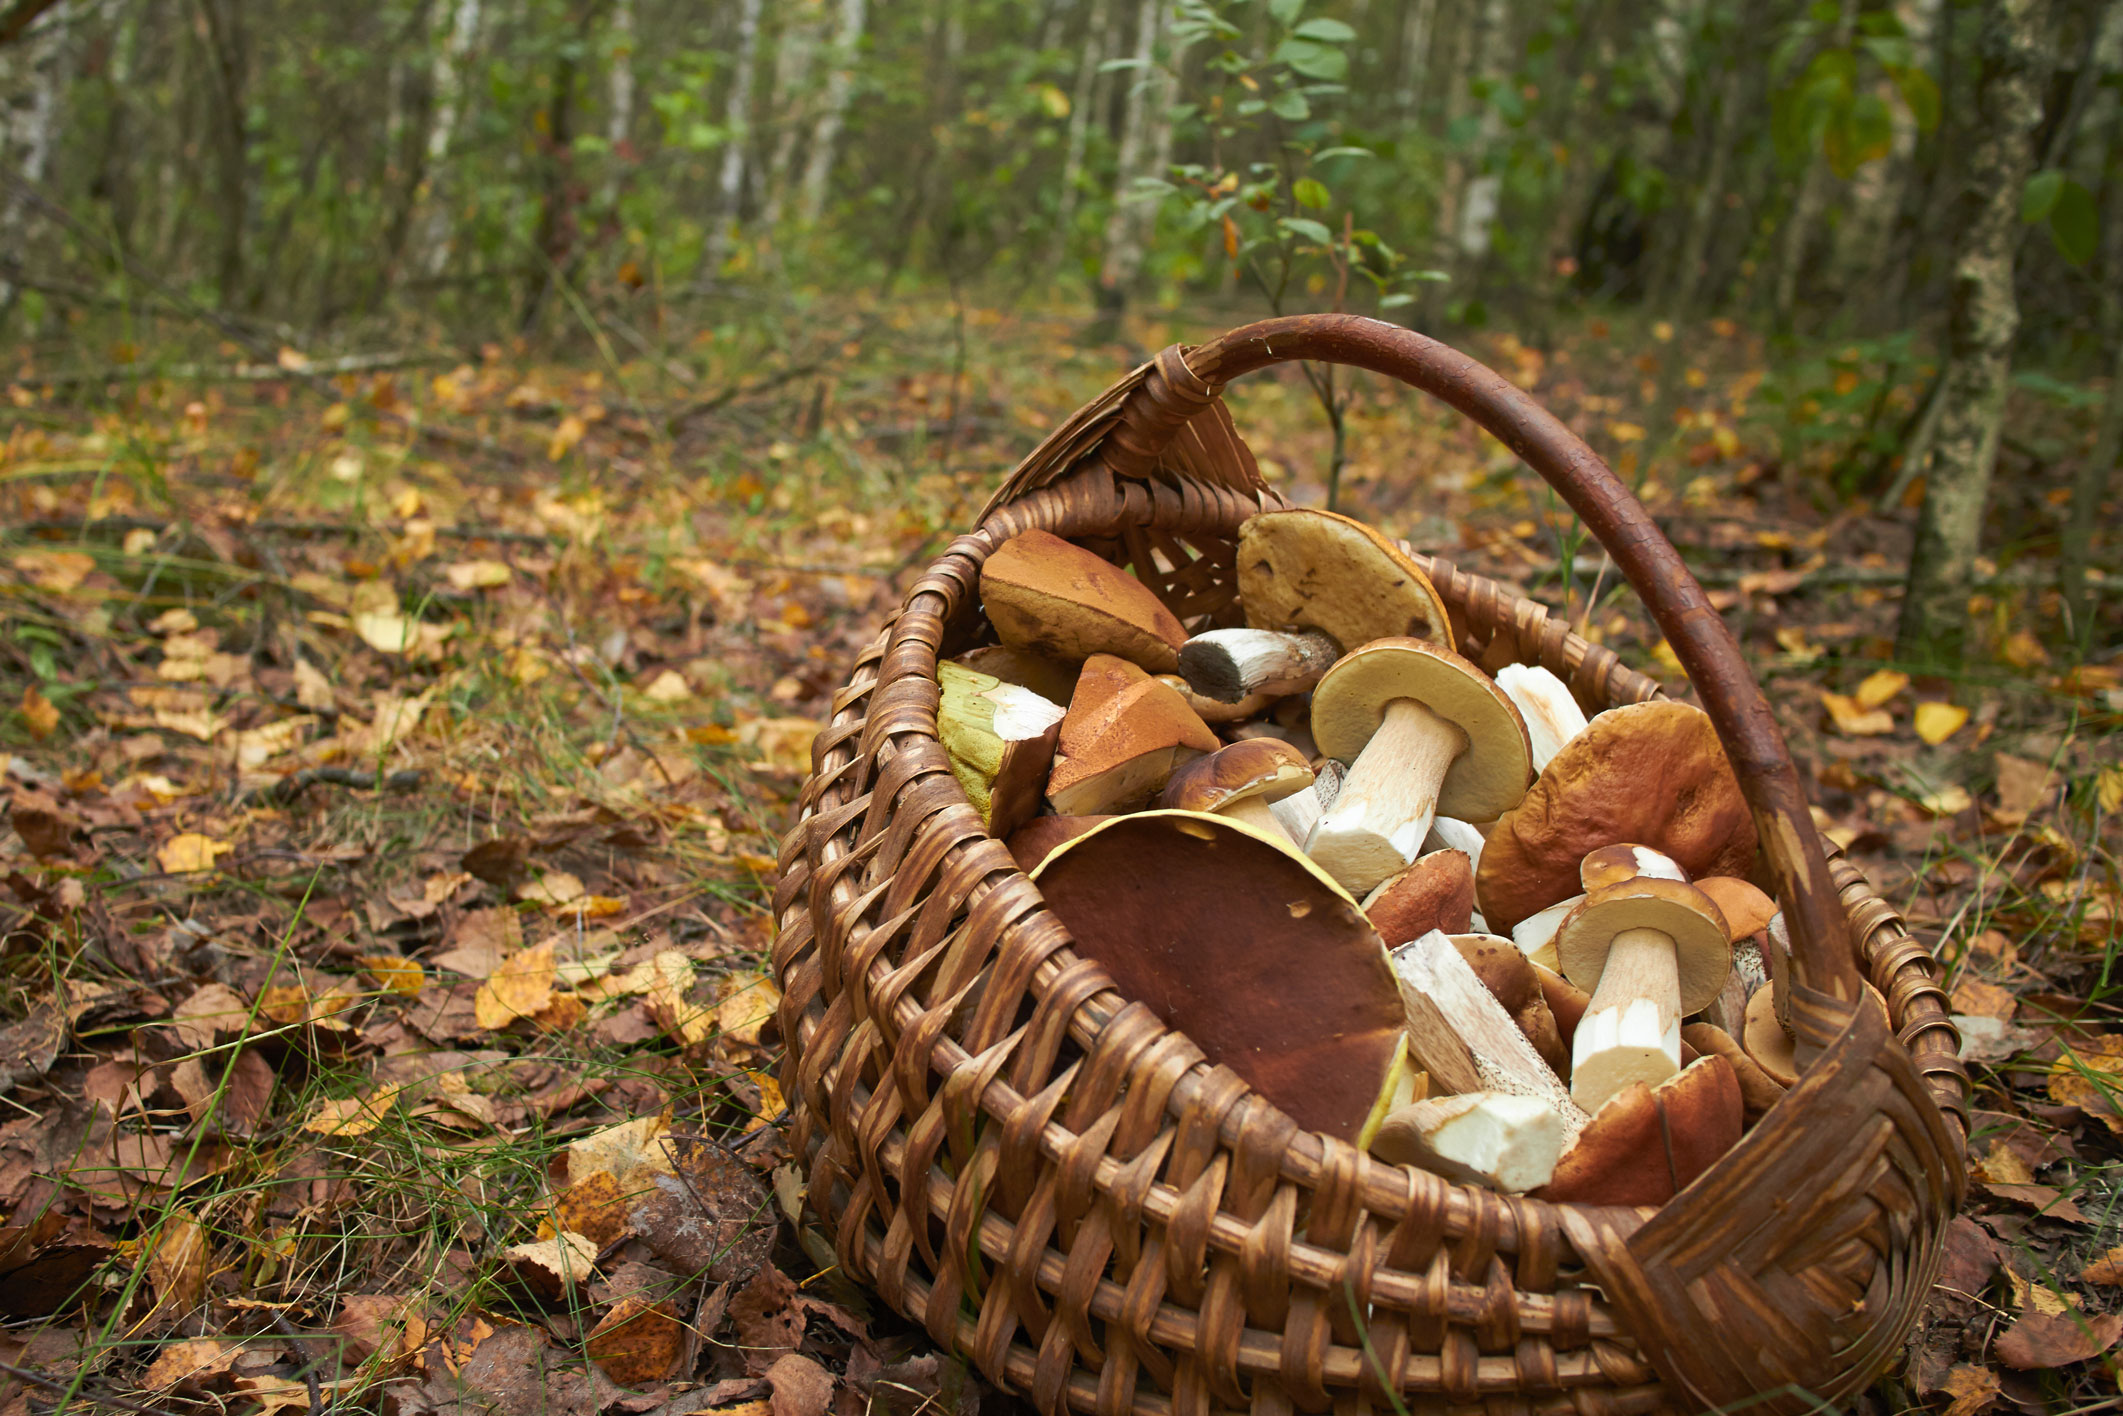 La saison de cueillette des champignons commence : restez vigilants face aux risques d’intoxications !